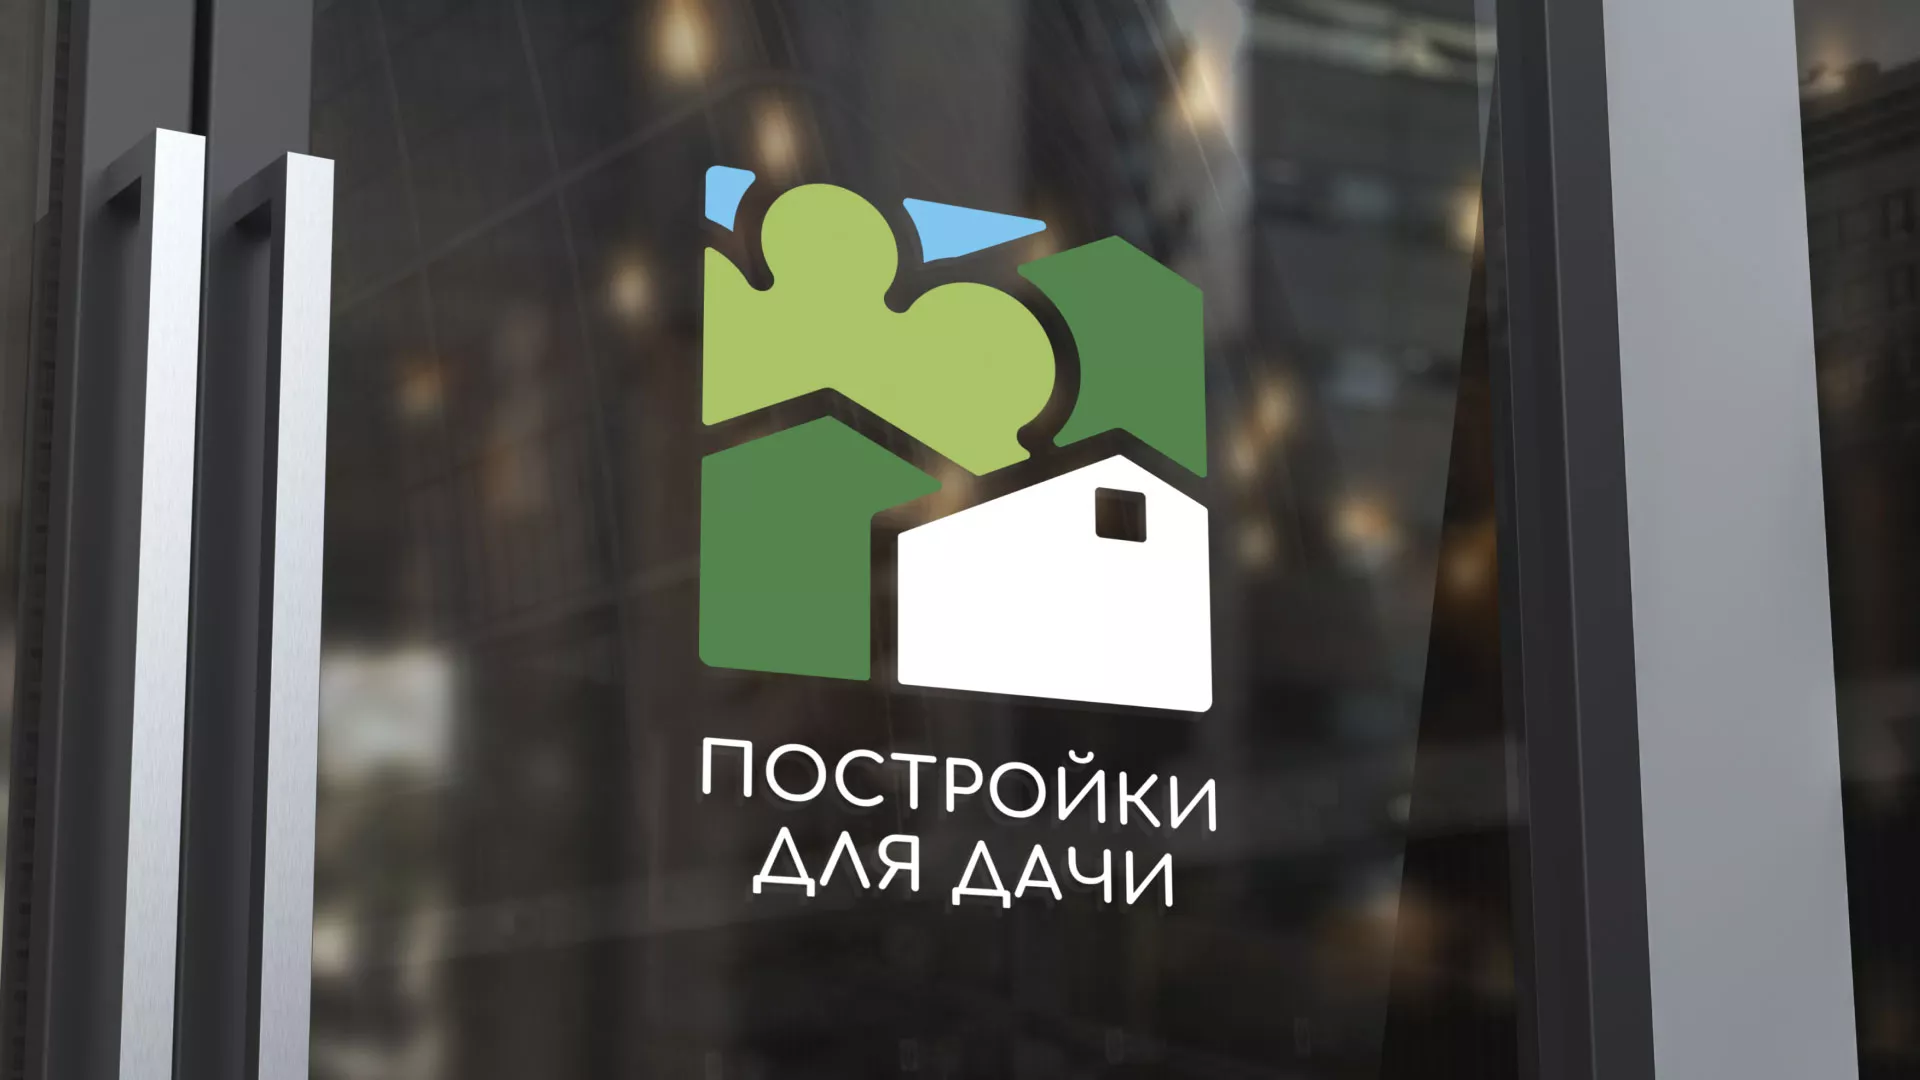 Разработка логотипа в Каменке для компании «Постройки для дачи»